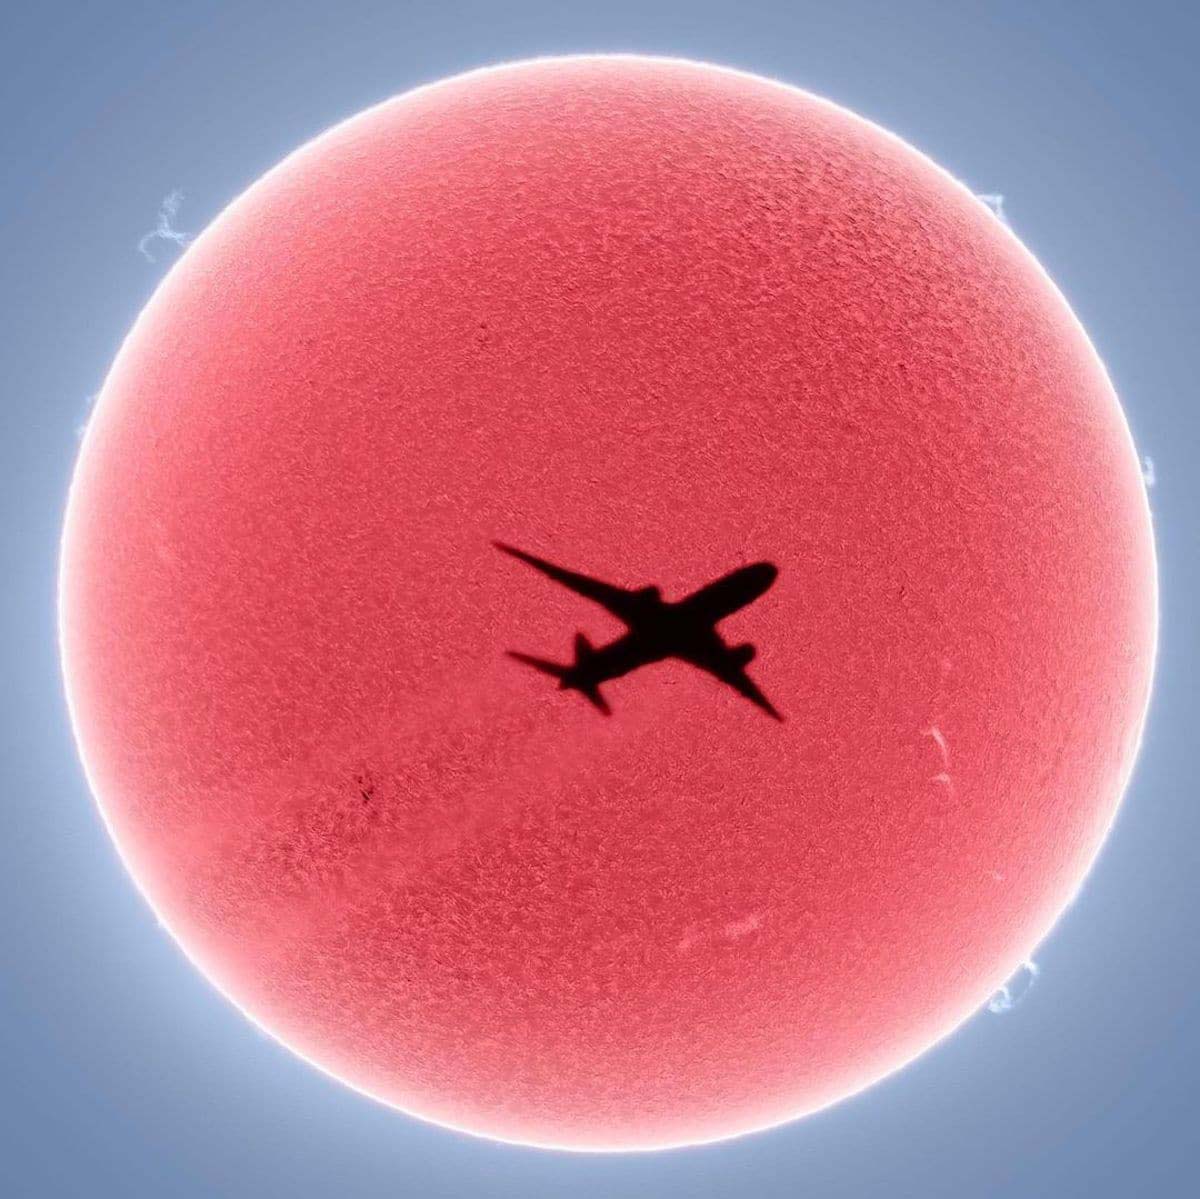 Esfera roja "El Sol" con un avión como sombra en la mitad. Un avión “cruzando” el sol